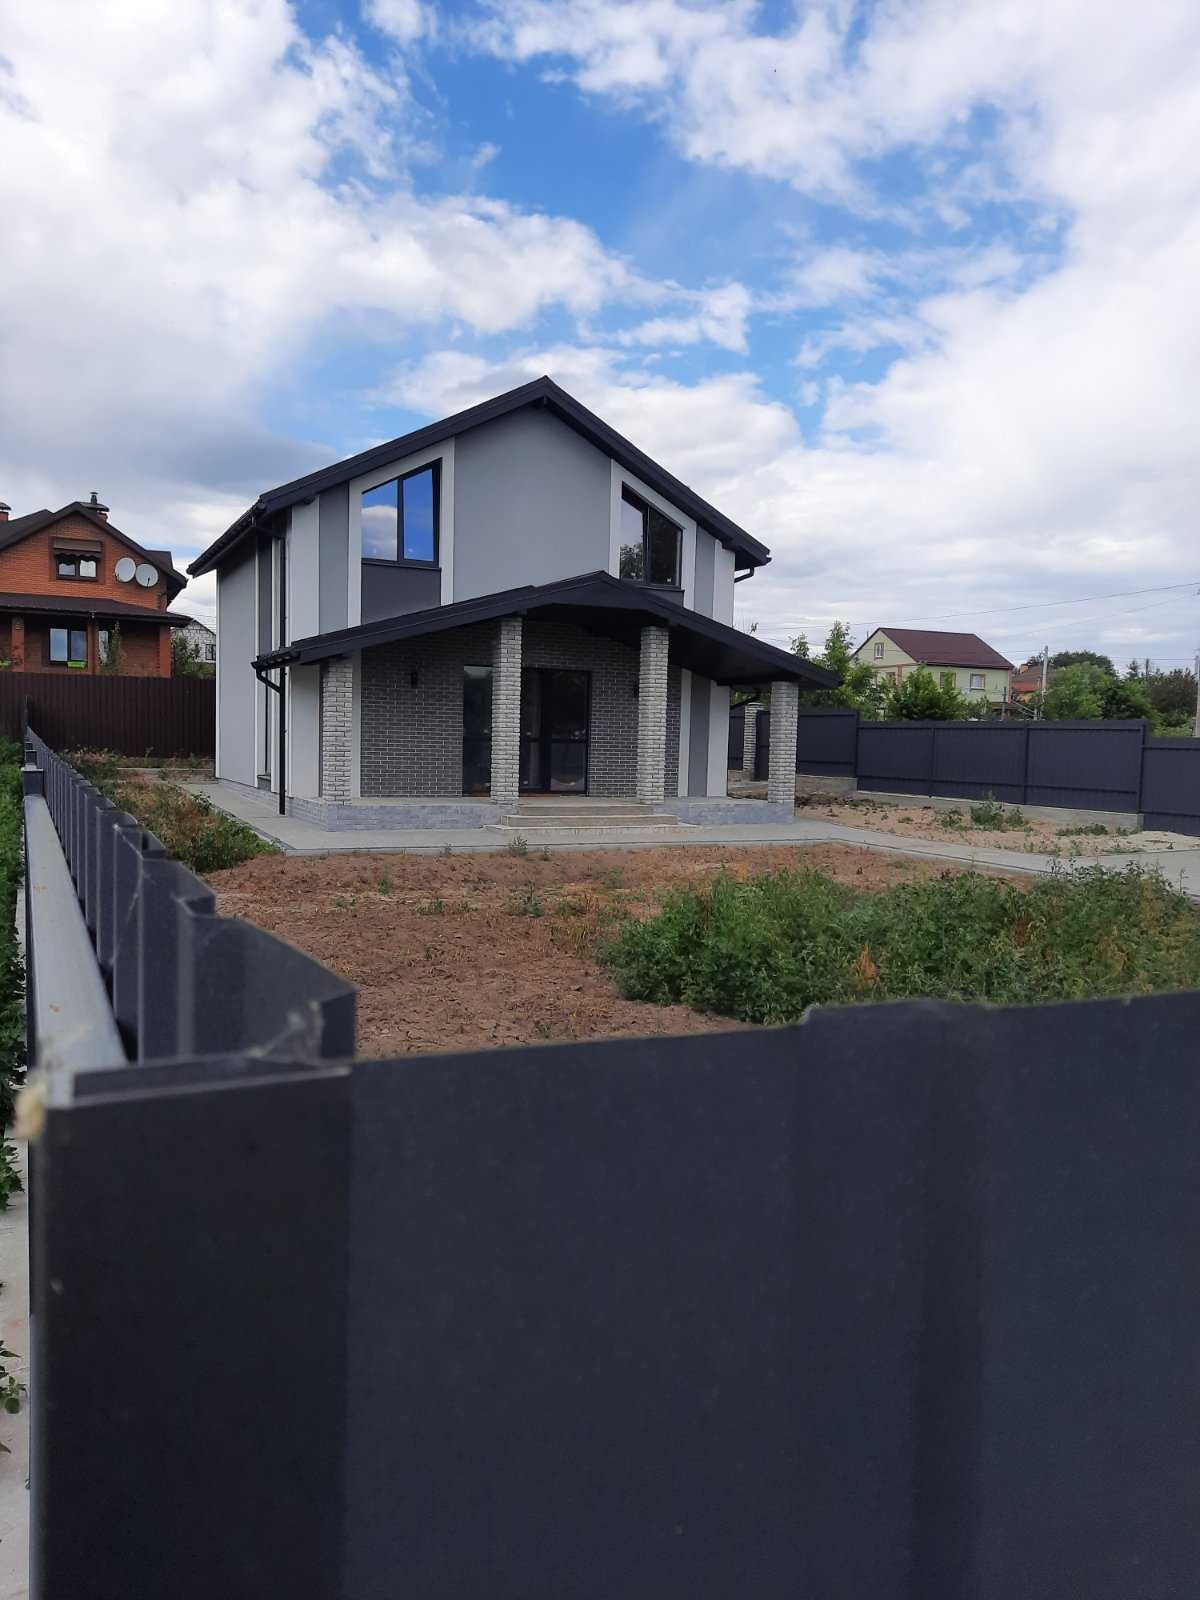 Продажа дома 111.34 м2 на 5 сотках земли в  Гостомеле.